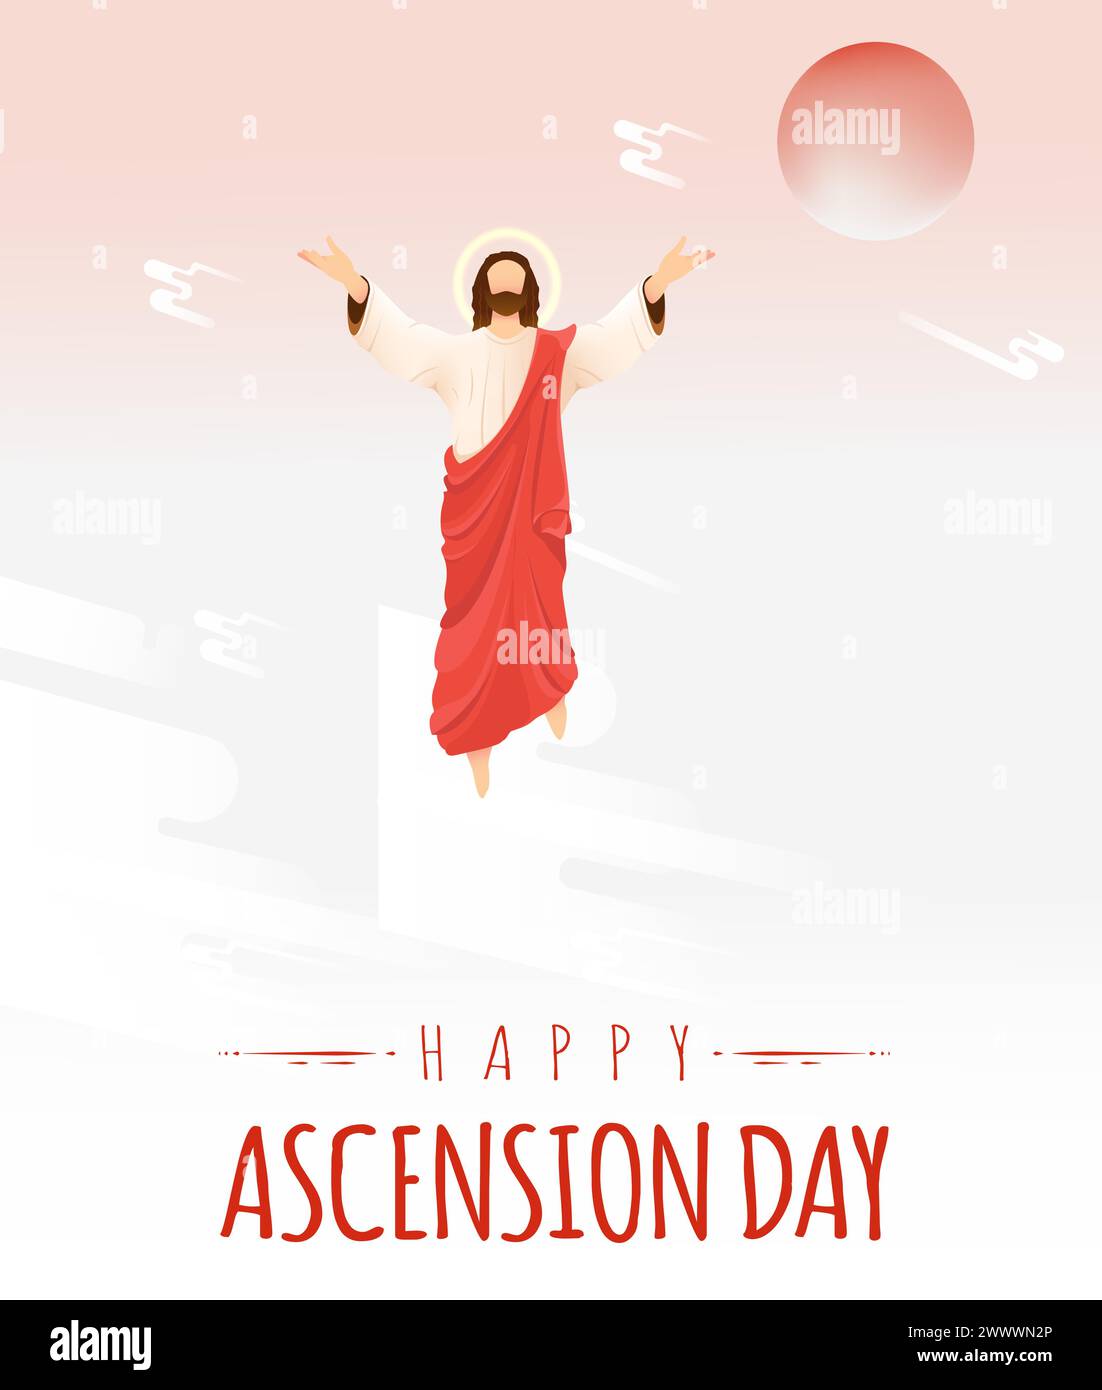 Happy Ascension Day Design mit Jesus Christus im Himmel Vektor Illustration. Illustration der Auferstehung Jesus Christus. Opfer des Messias für die Menschen Stock Vektor